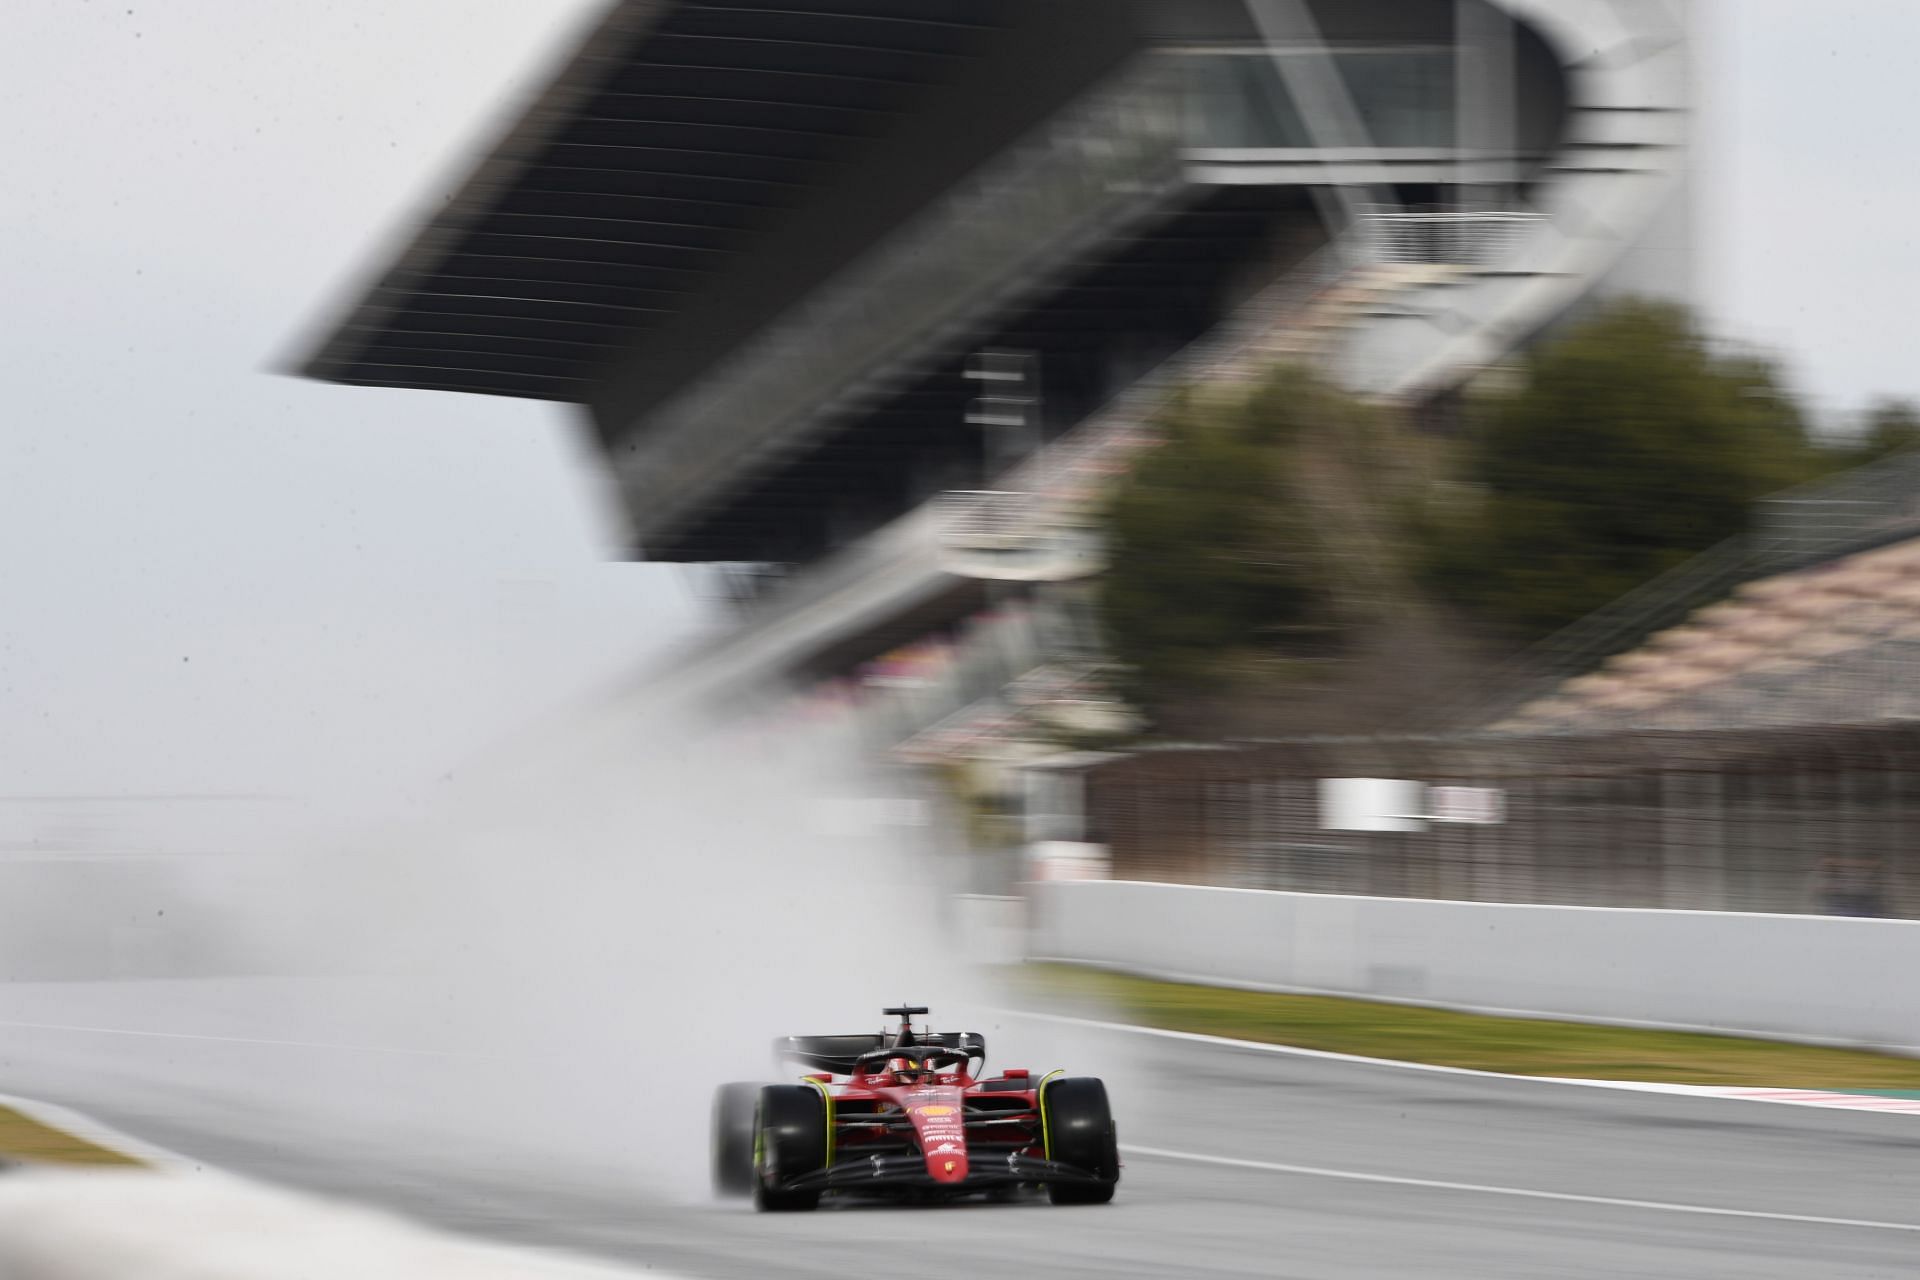 Ferrari made a positive start to their F1 2022 season